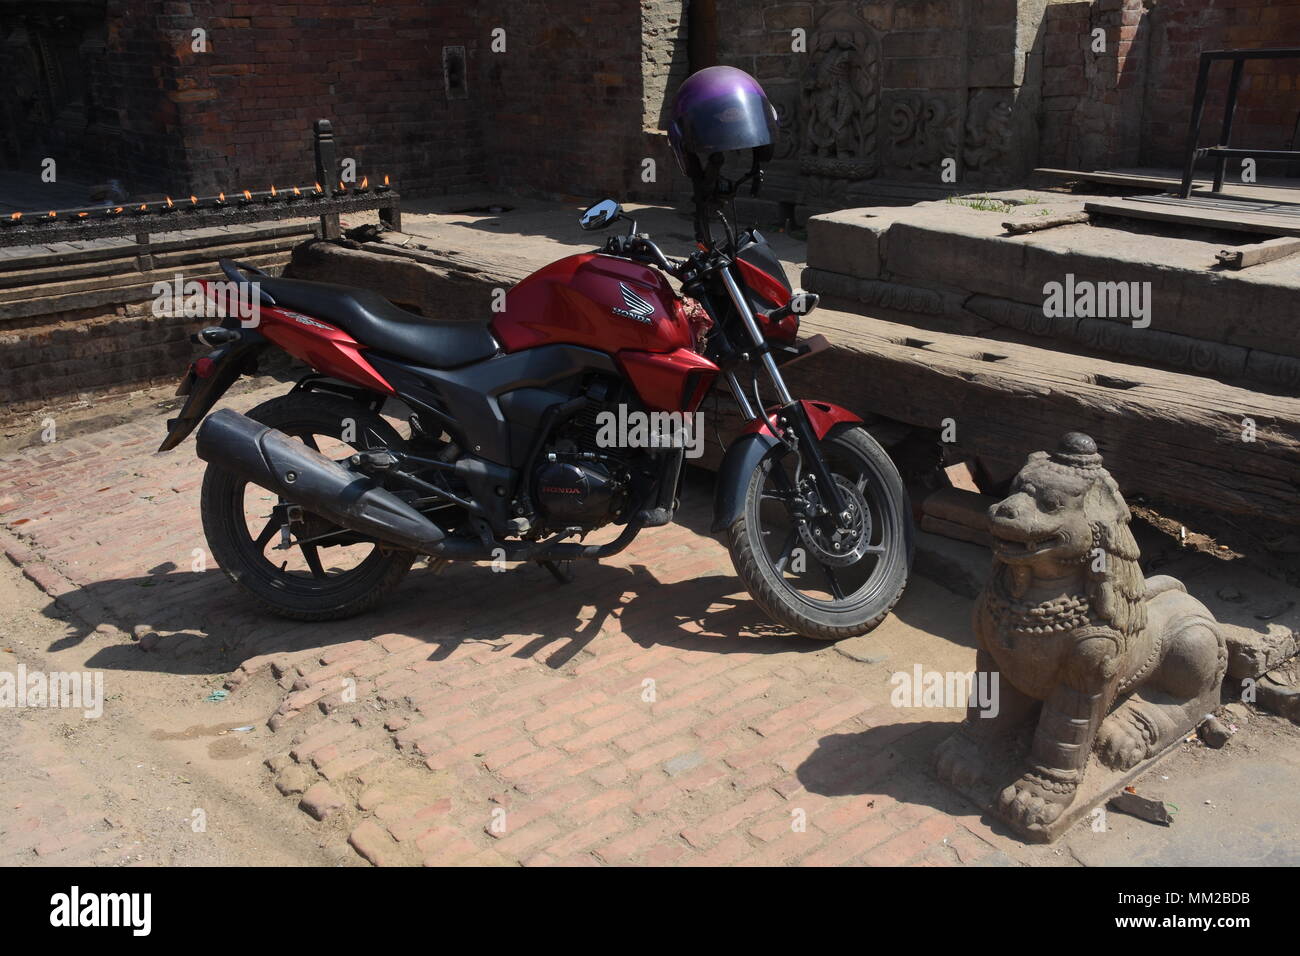 Bhaktapur, Nepal - Marzo 23, 2018: moto moderna y antigua estatua de león Foto de stock